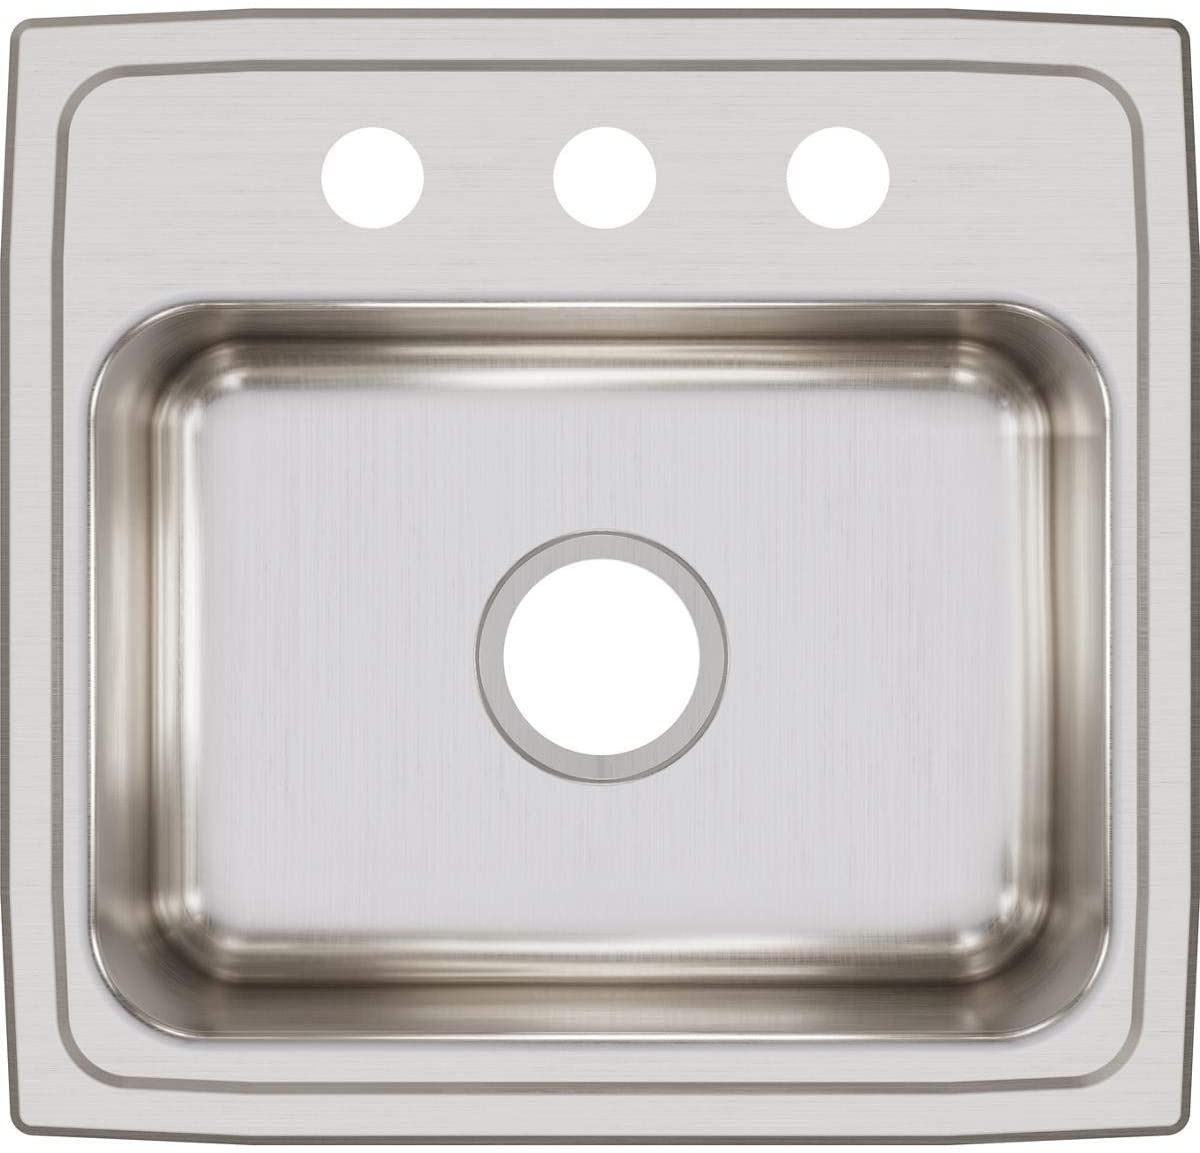 Elkay LR19183 - 18 Gauge Stainless Steel 19" x 18" x 7.625" Single Bowl Drop-in Kitchen Sink